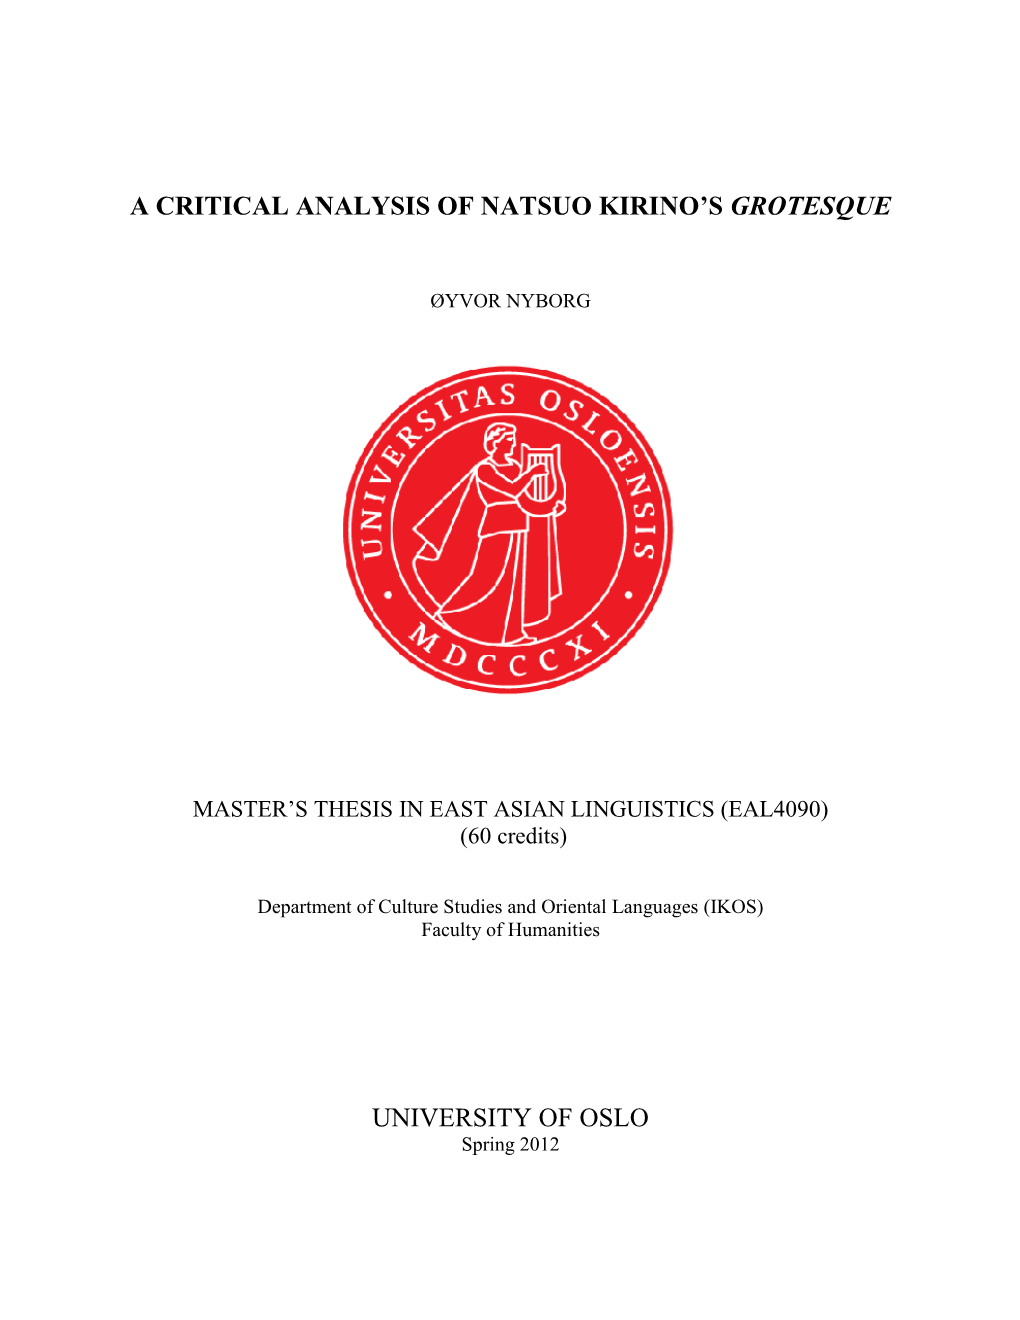 A Critical Analysis of Natsuo Kirino's Grotesque University of Oslo